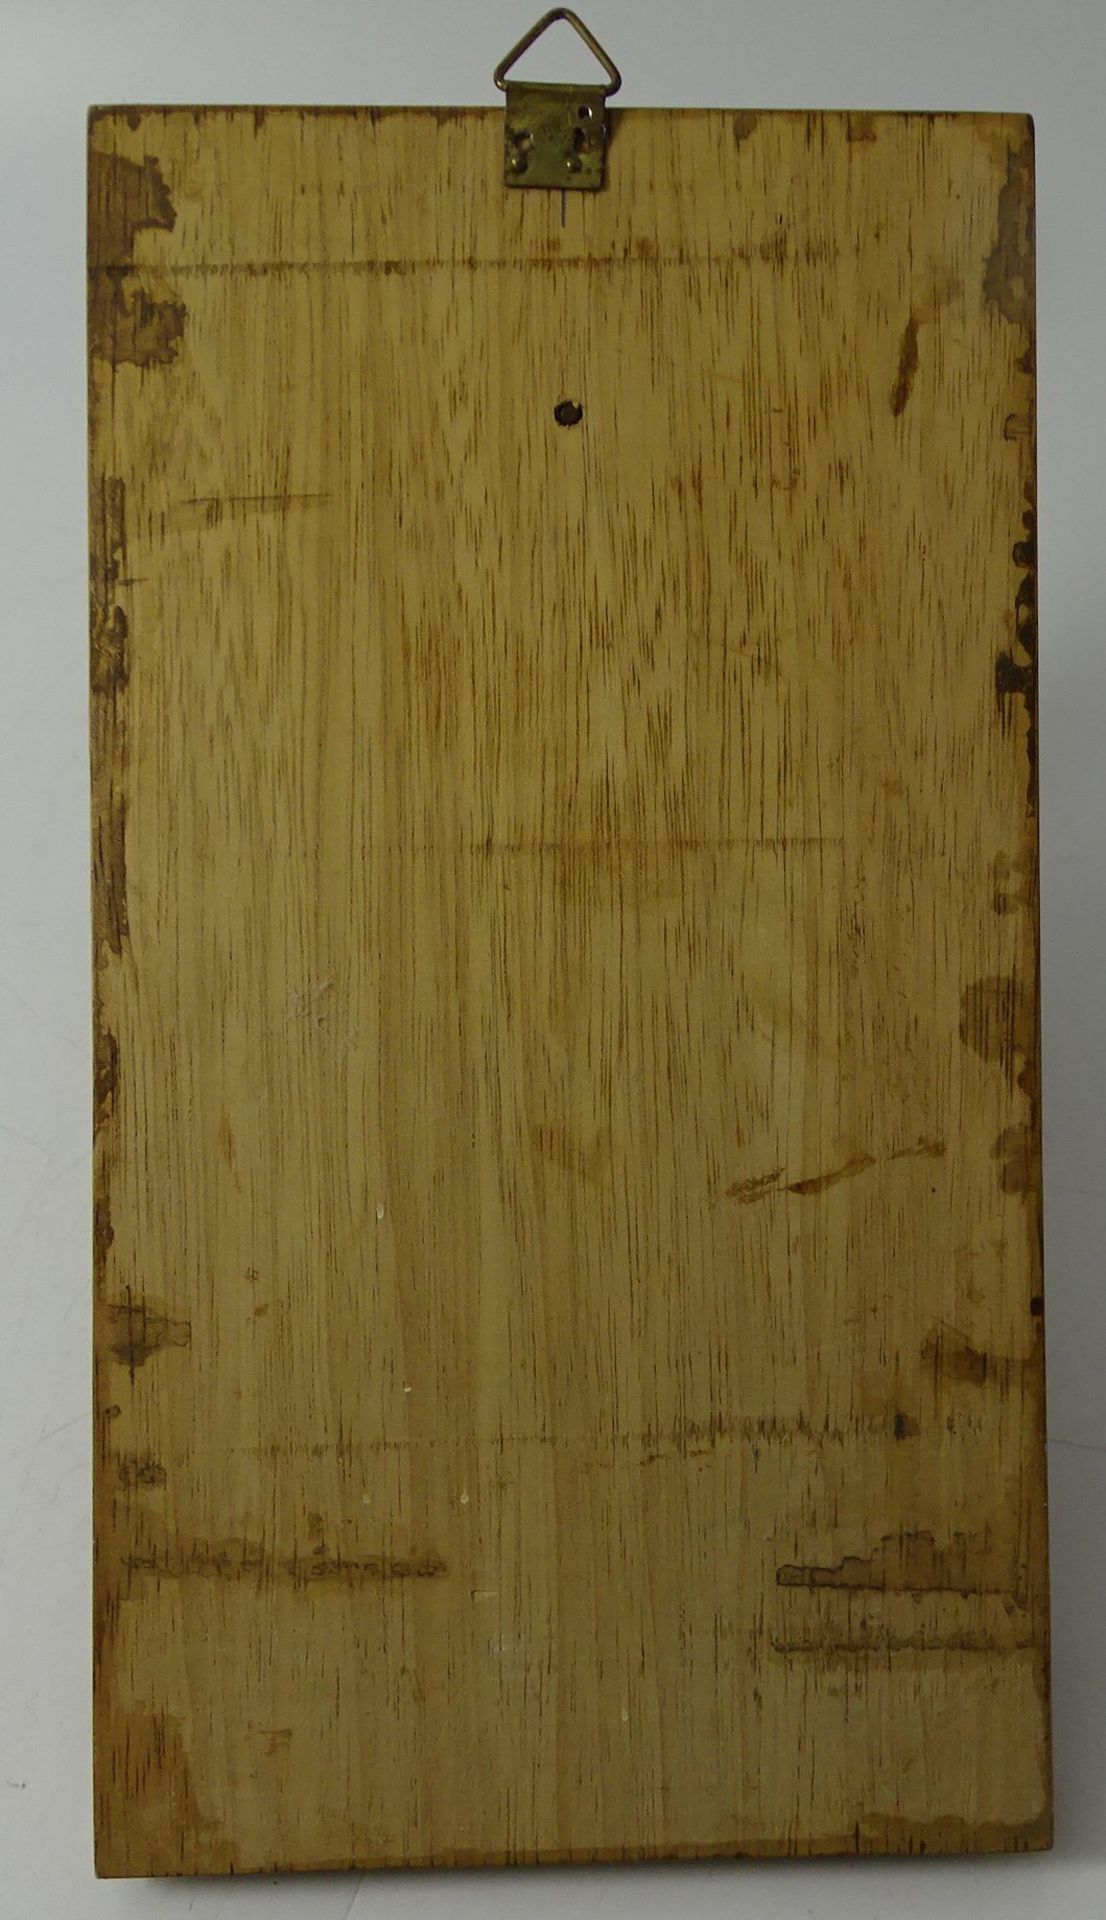 kl. Schiffsglocke auf Holzbrett mit Tau, Messing, 23x12 cm - Bild 4 aus 4